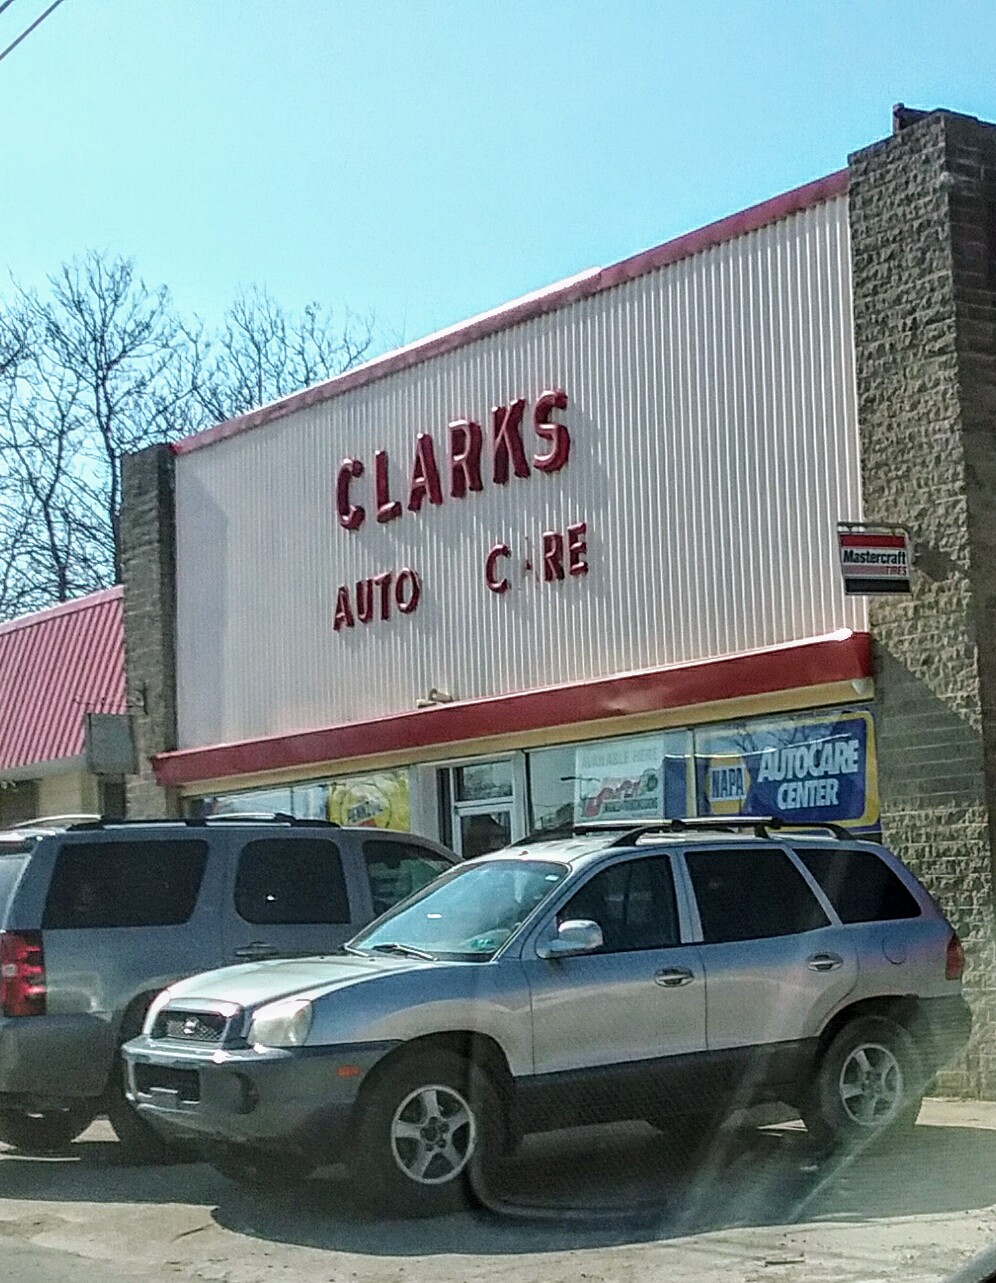 Clark's Auto Care Inc